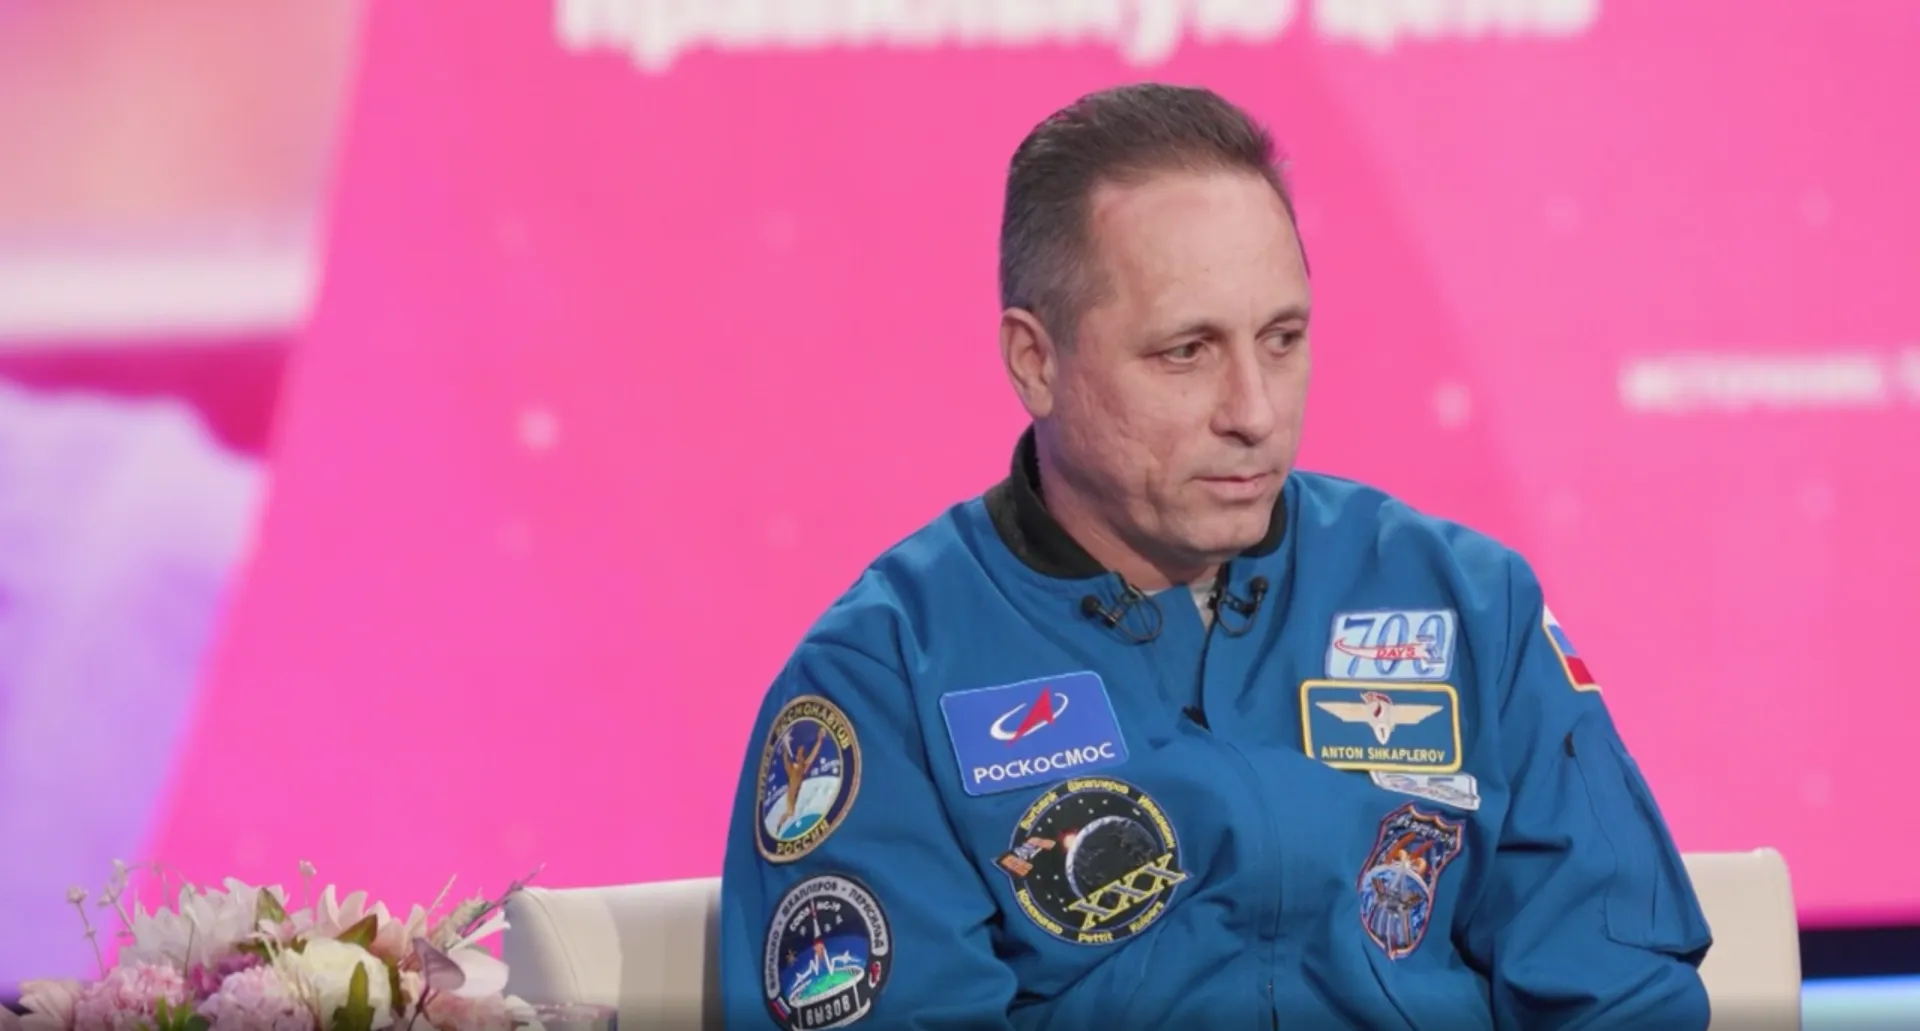 Не жалею: Антон Шкаплеров рассказал, как стал космонавтом, следуя за своей мечтой